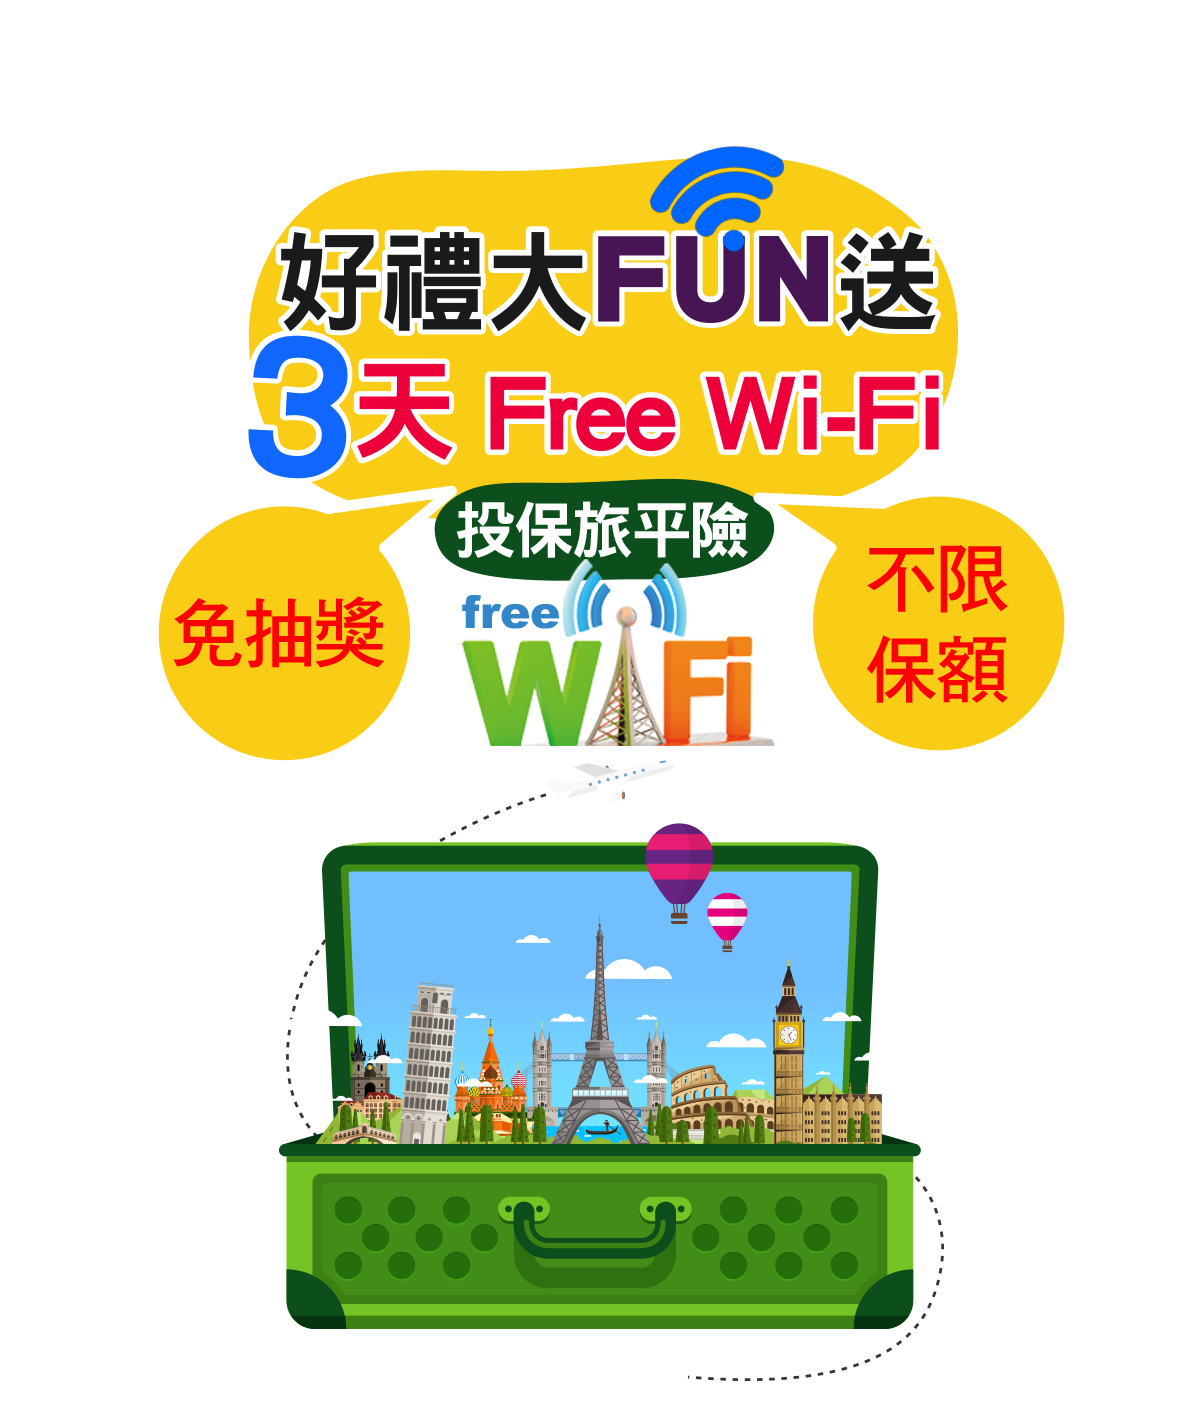 【免抽獎】網路投保旅平險送3天免費Wi-Fi